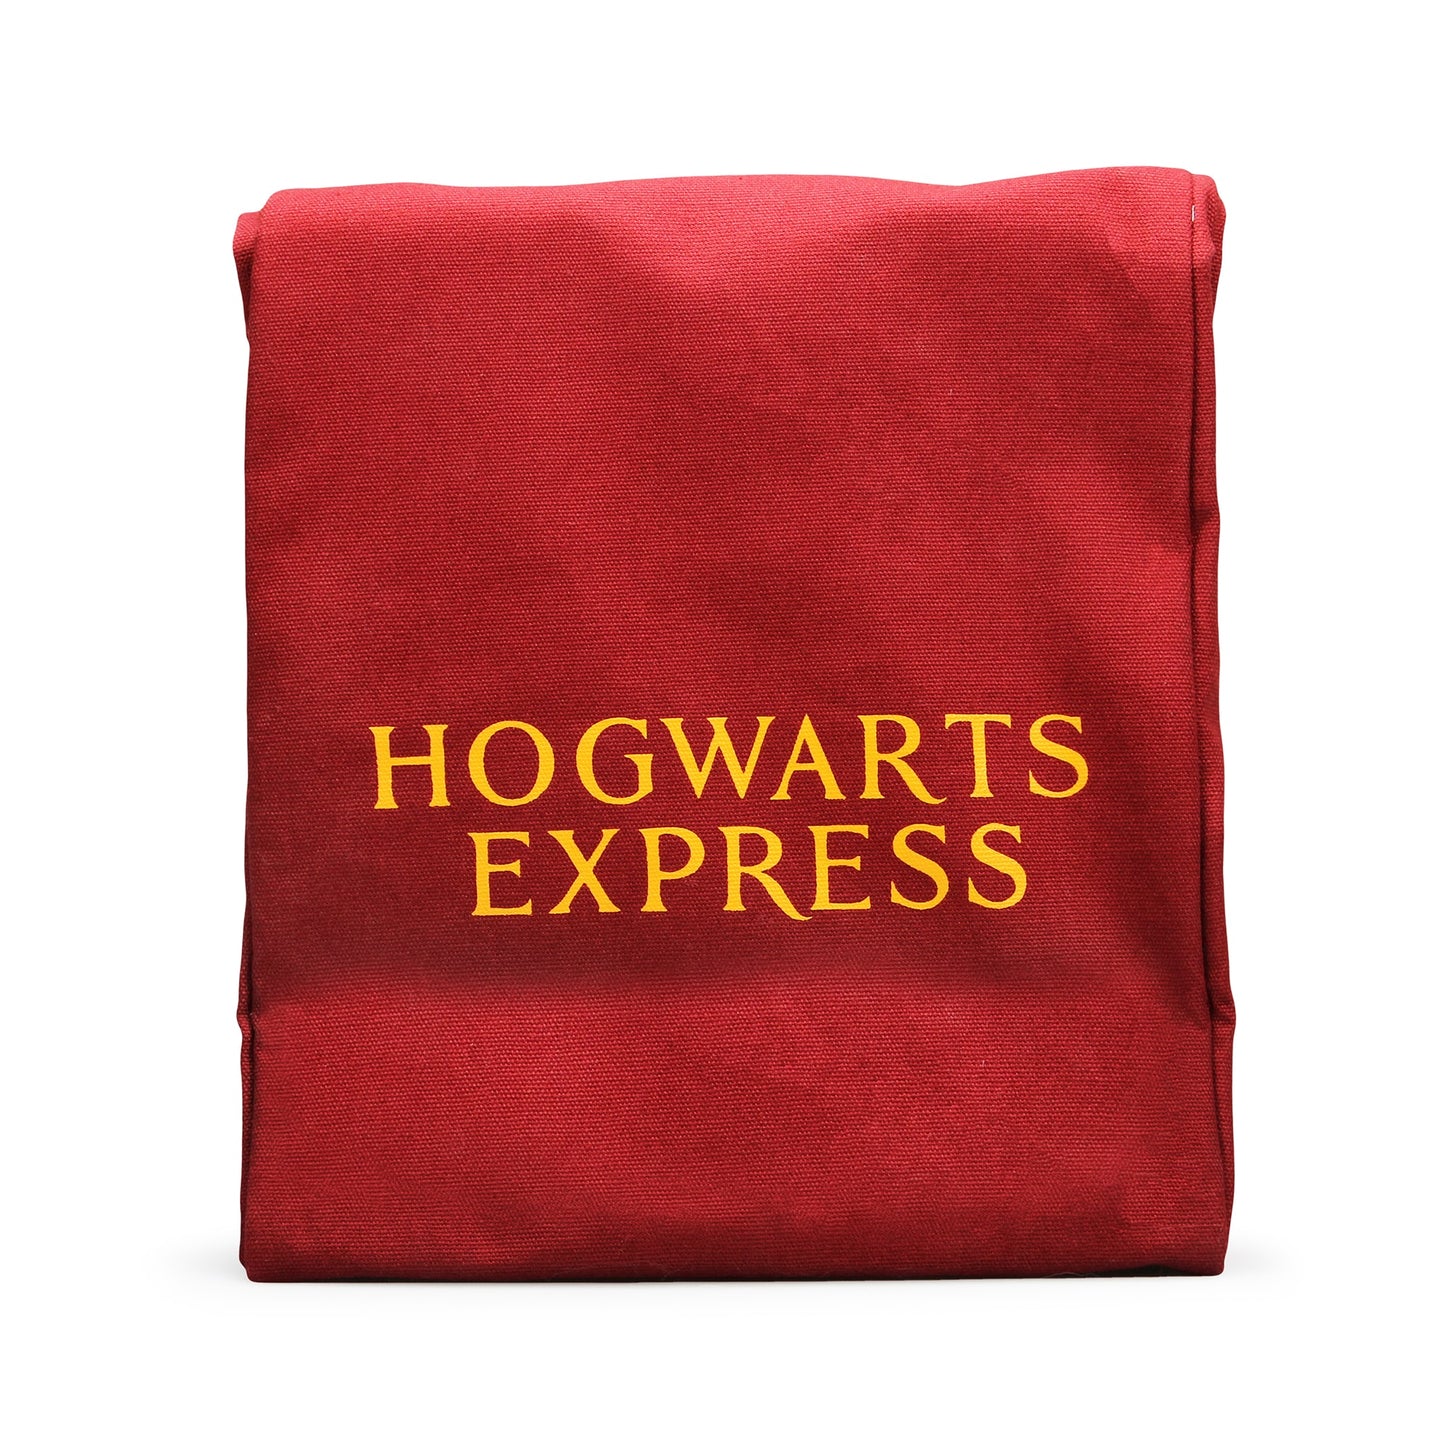 Platform 9 3/4 Lunch Bag - Harry Potter Gifts & Merchandse